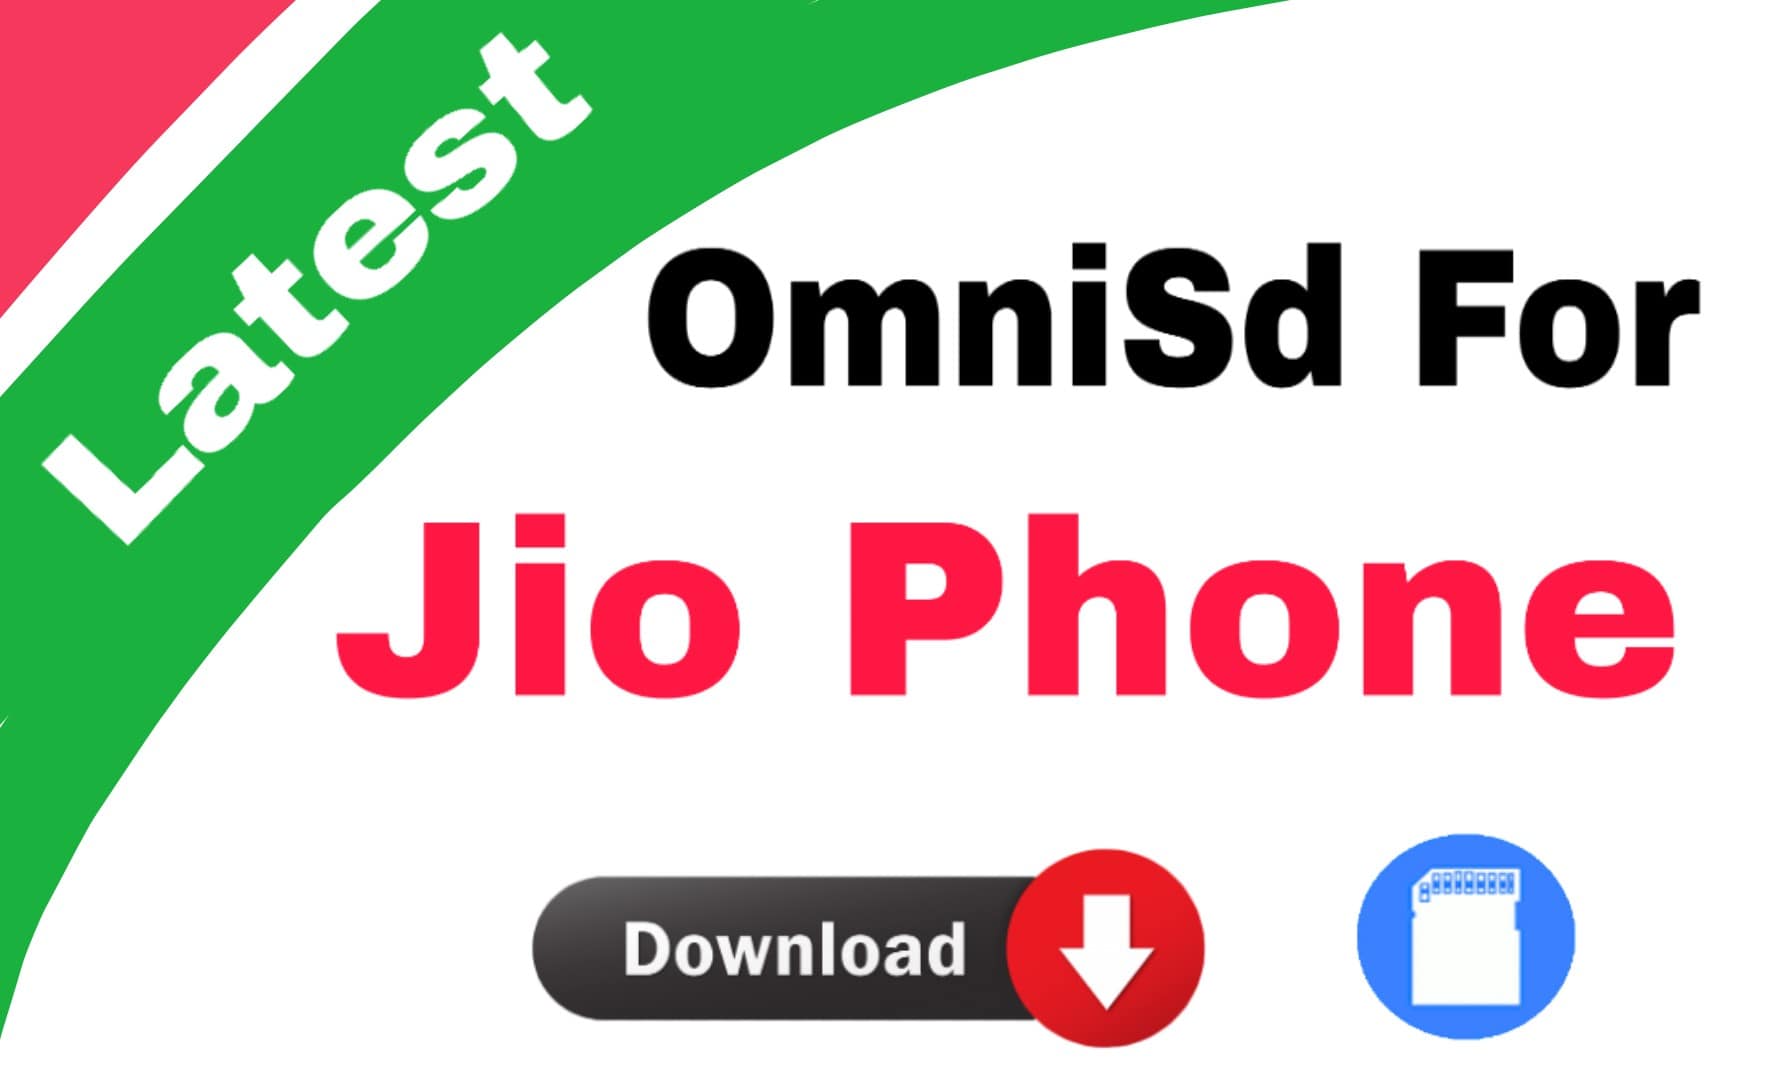 omnisd download for jio phone | omnisd app download india